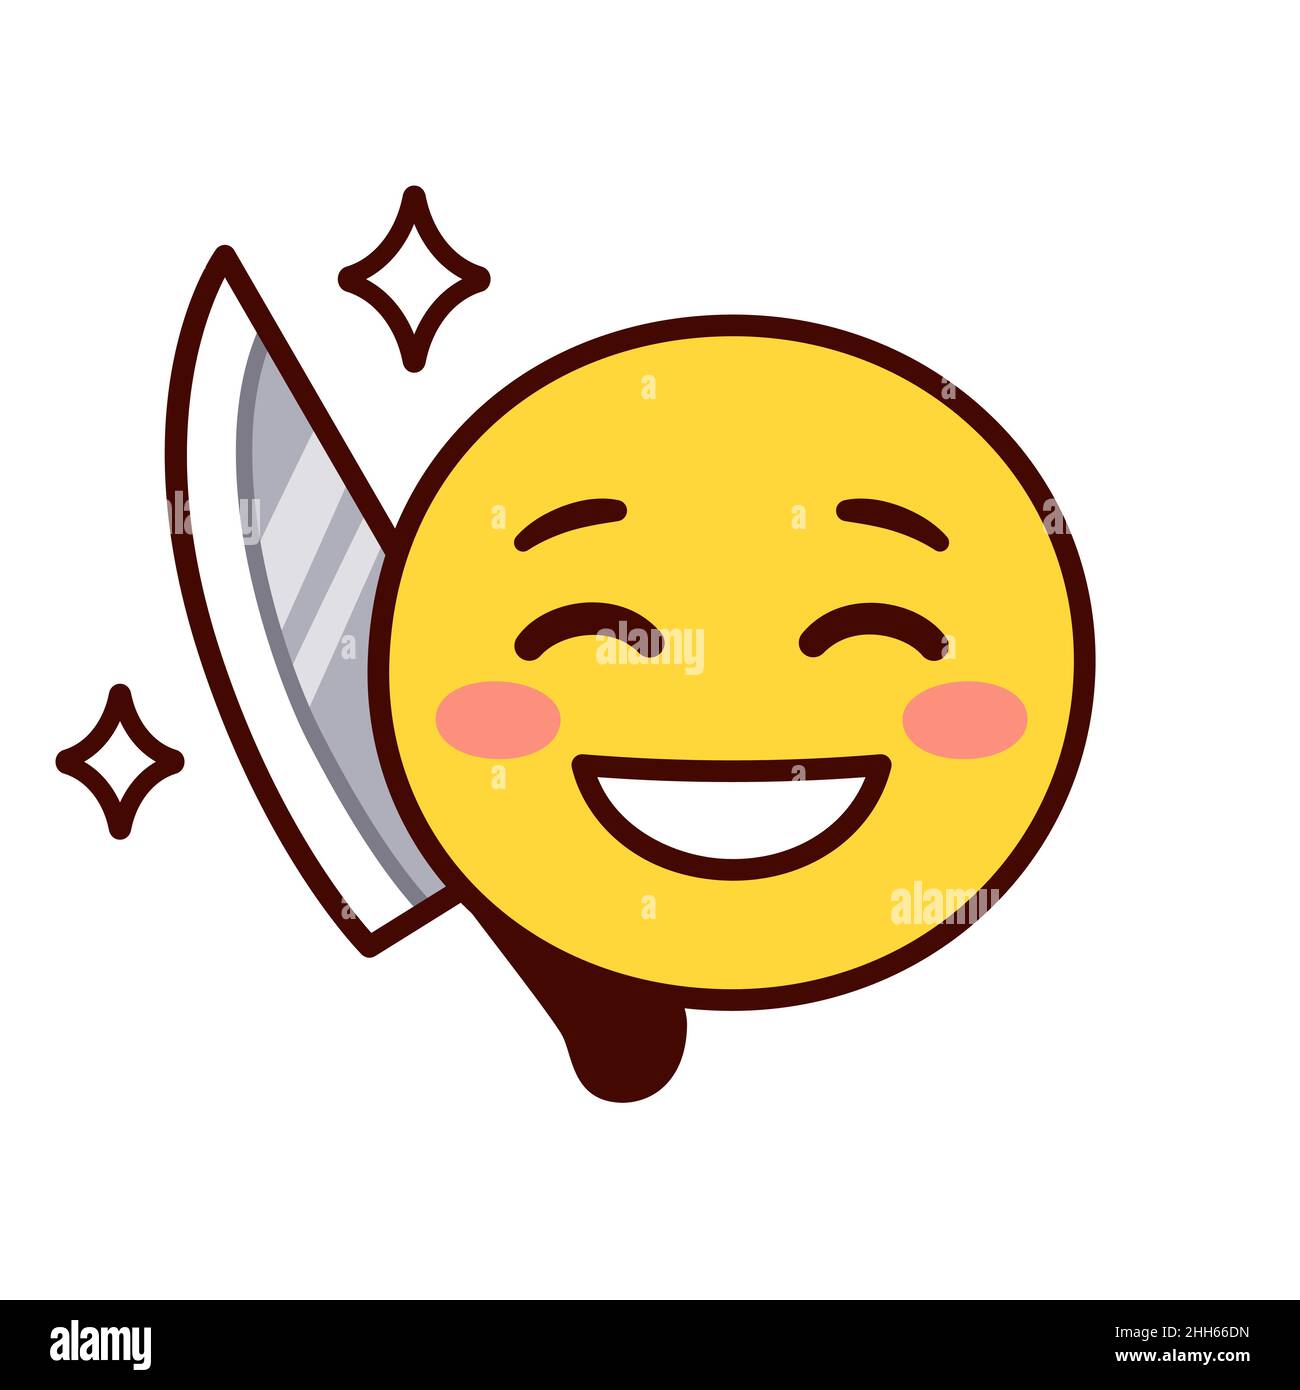 笑里藏刀 Chinese expression: A knife hidden behind a smile. Smiling emoji hiding knife behind back. Stock Vector